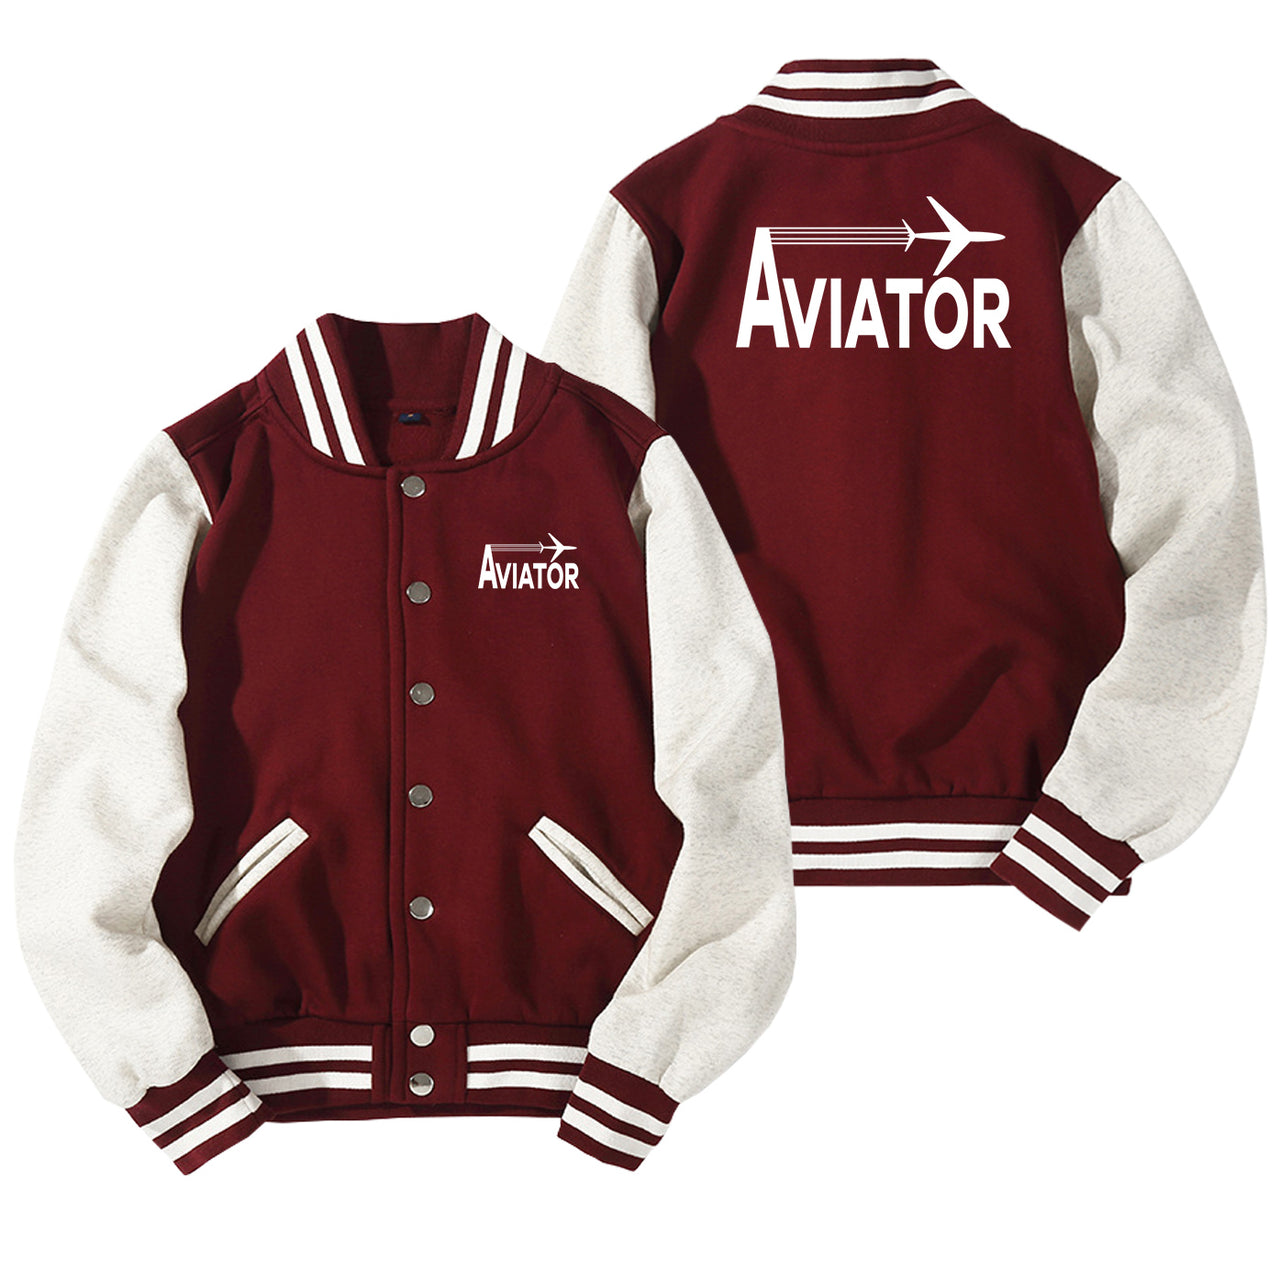 Aviator Designed Baseball Style Jackets